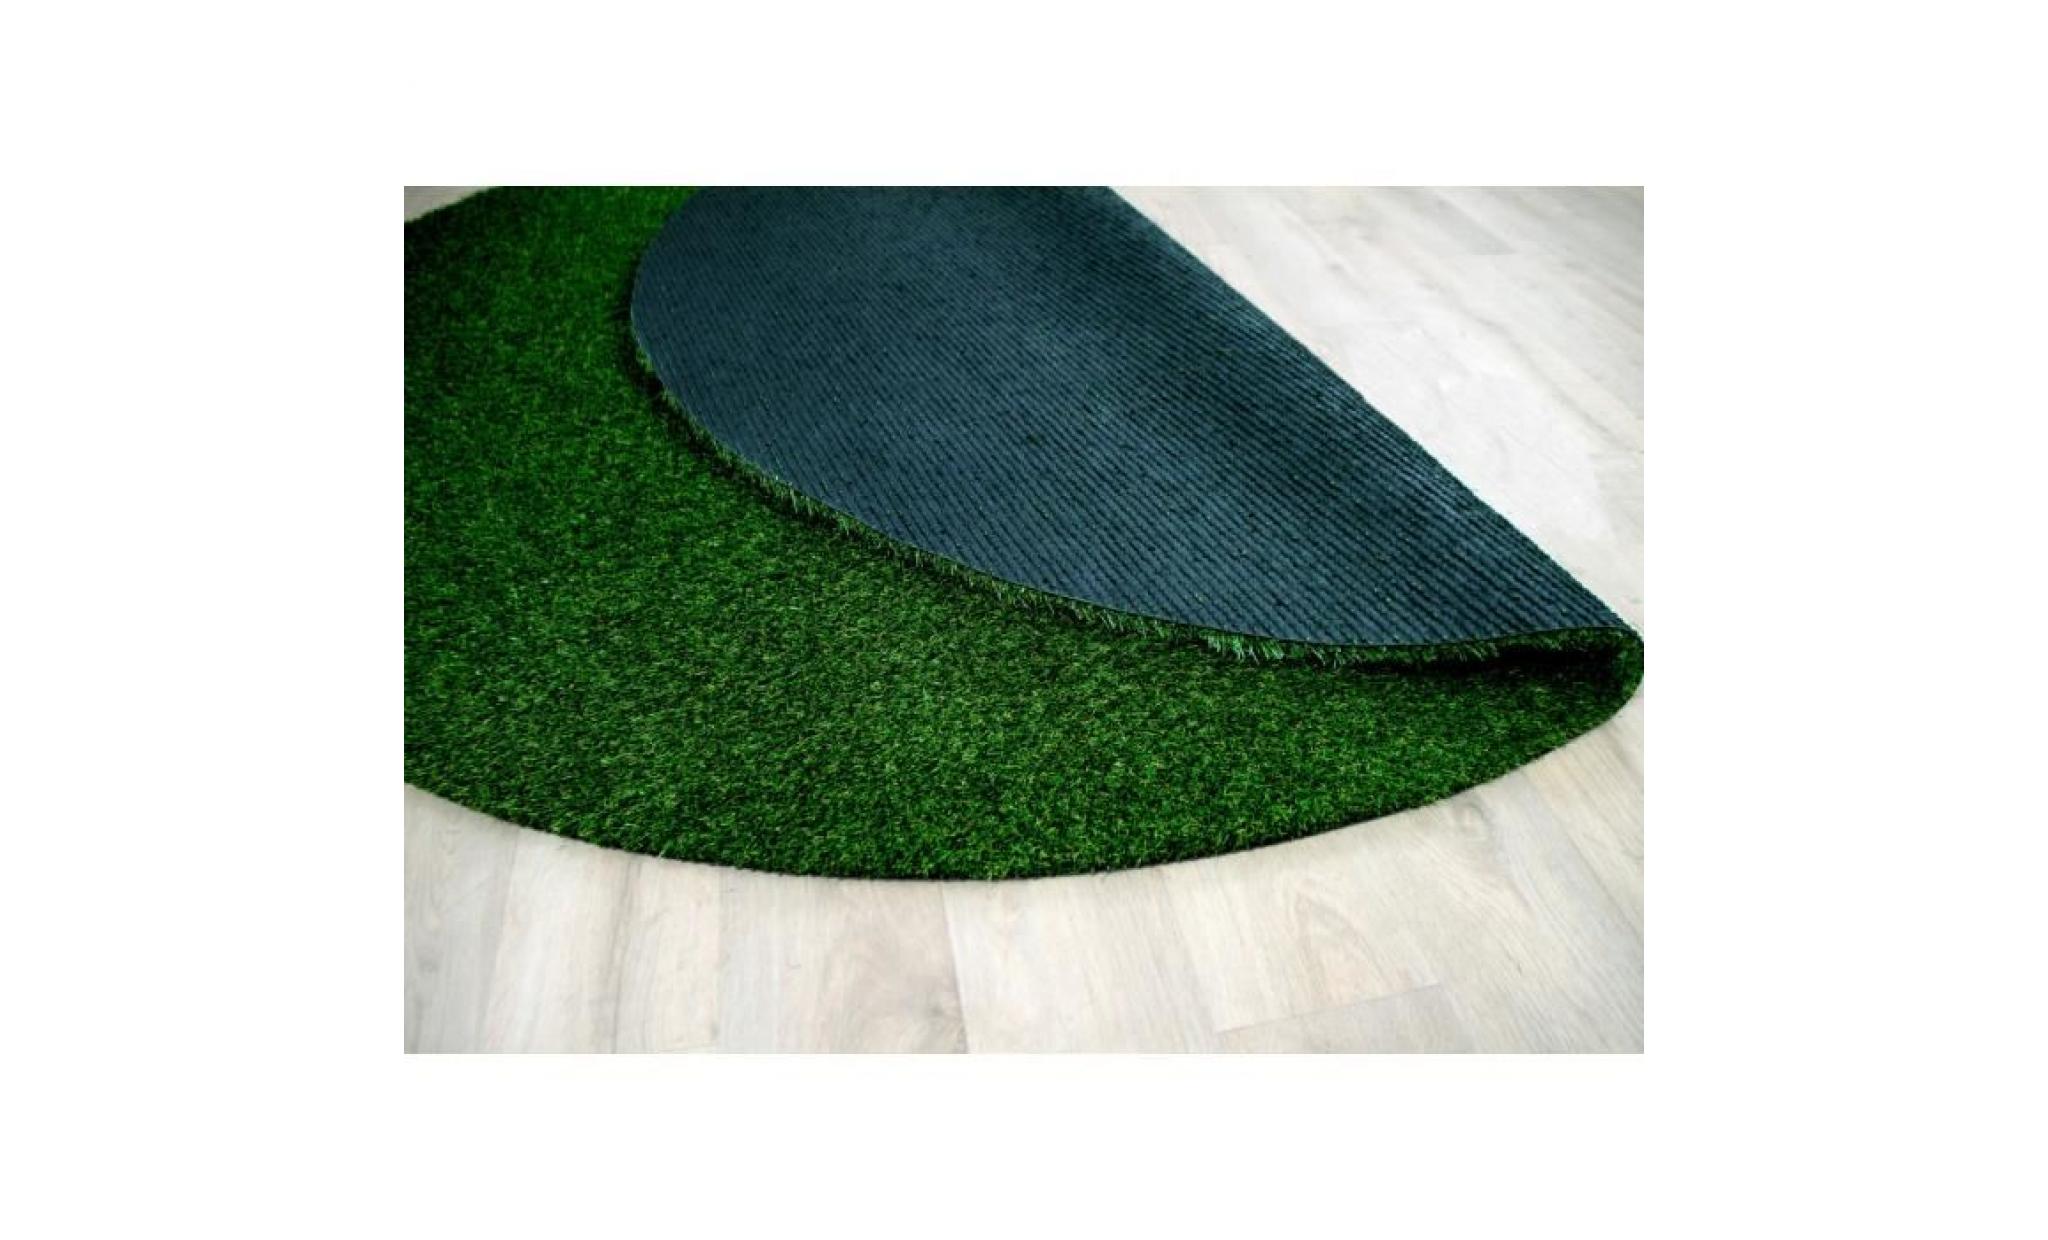 chelsea   tapis type luxe gazon artificiel rond – pour jardin, terrasse, balcon   vert   [100 cm rond] pas cher